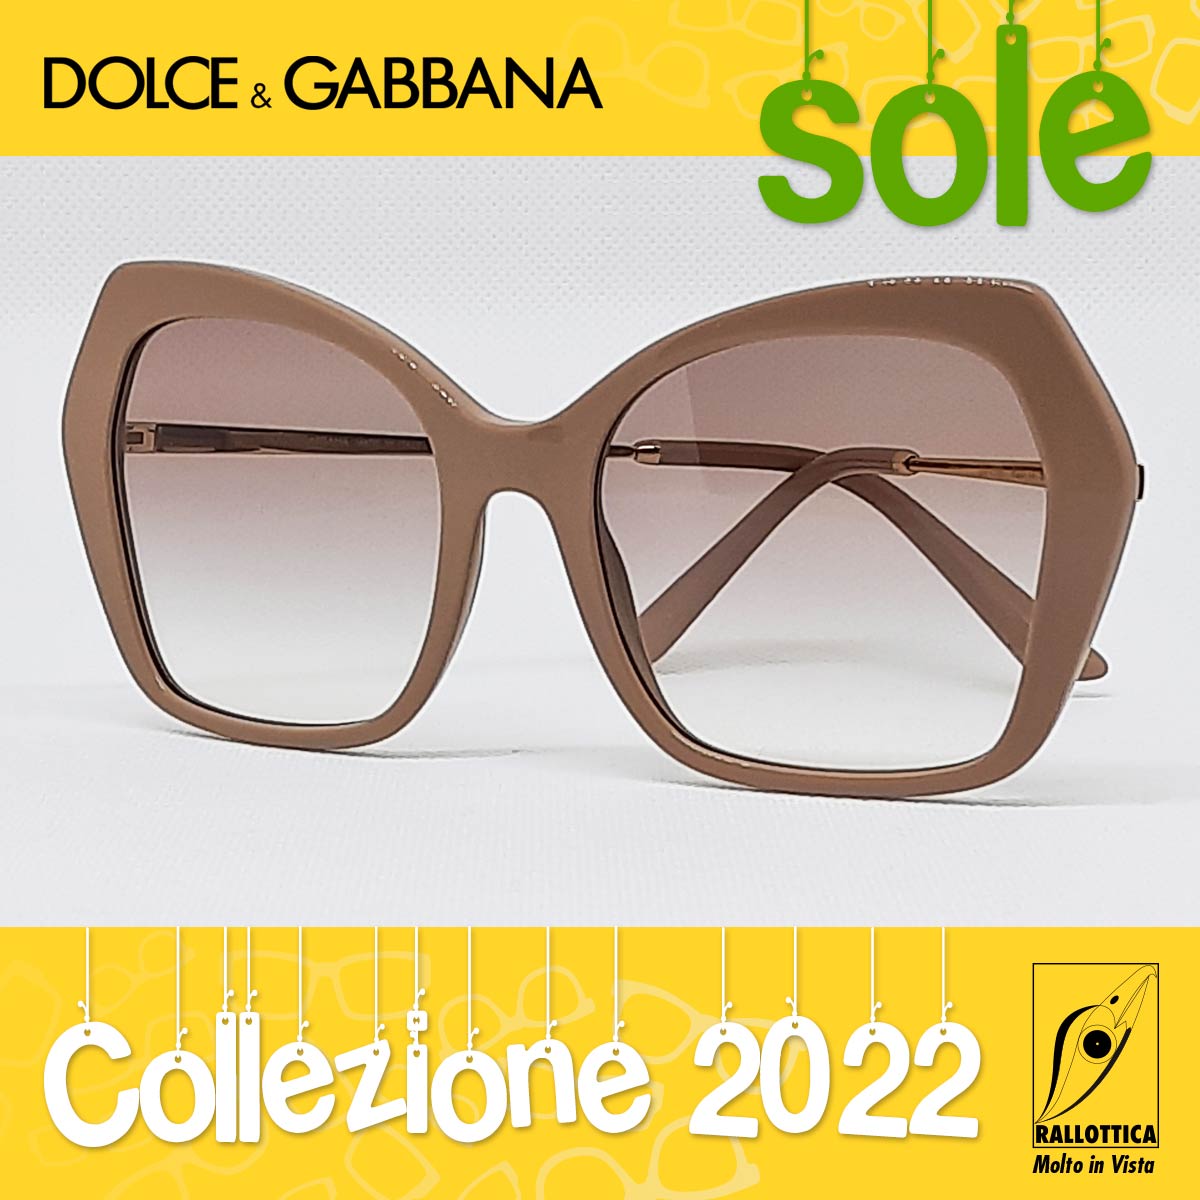 Dolce&Gabbana Sole